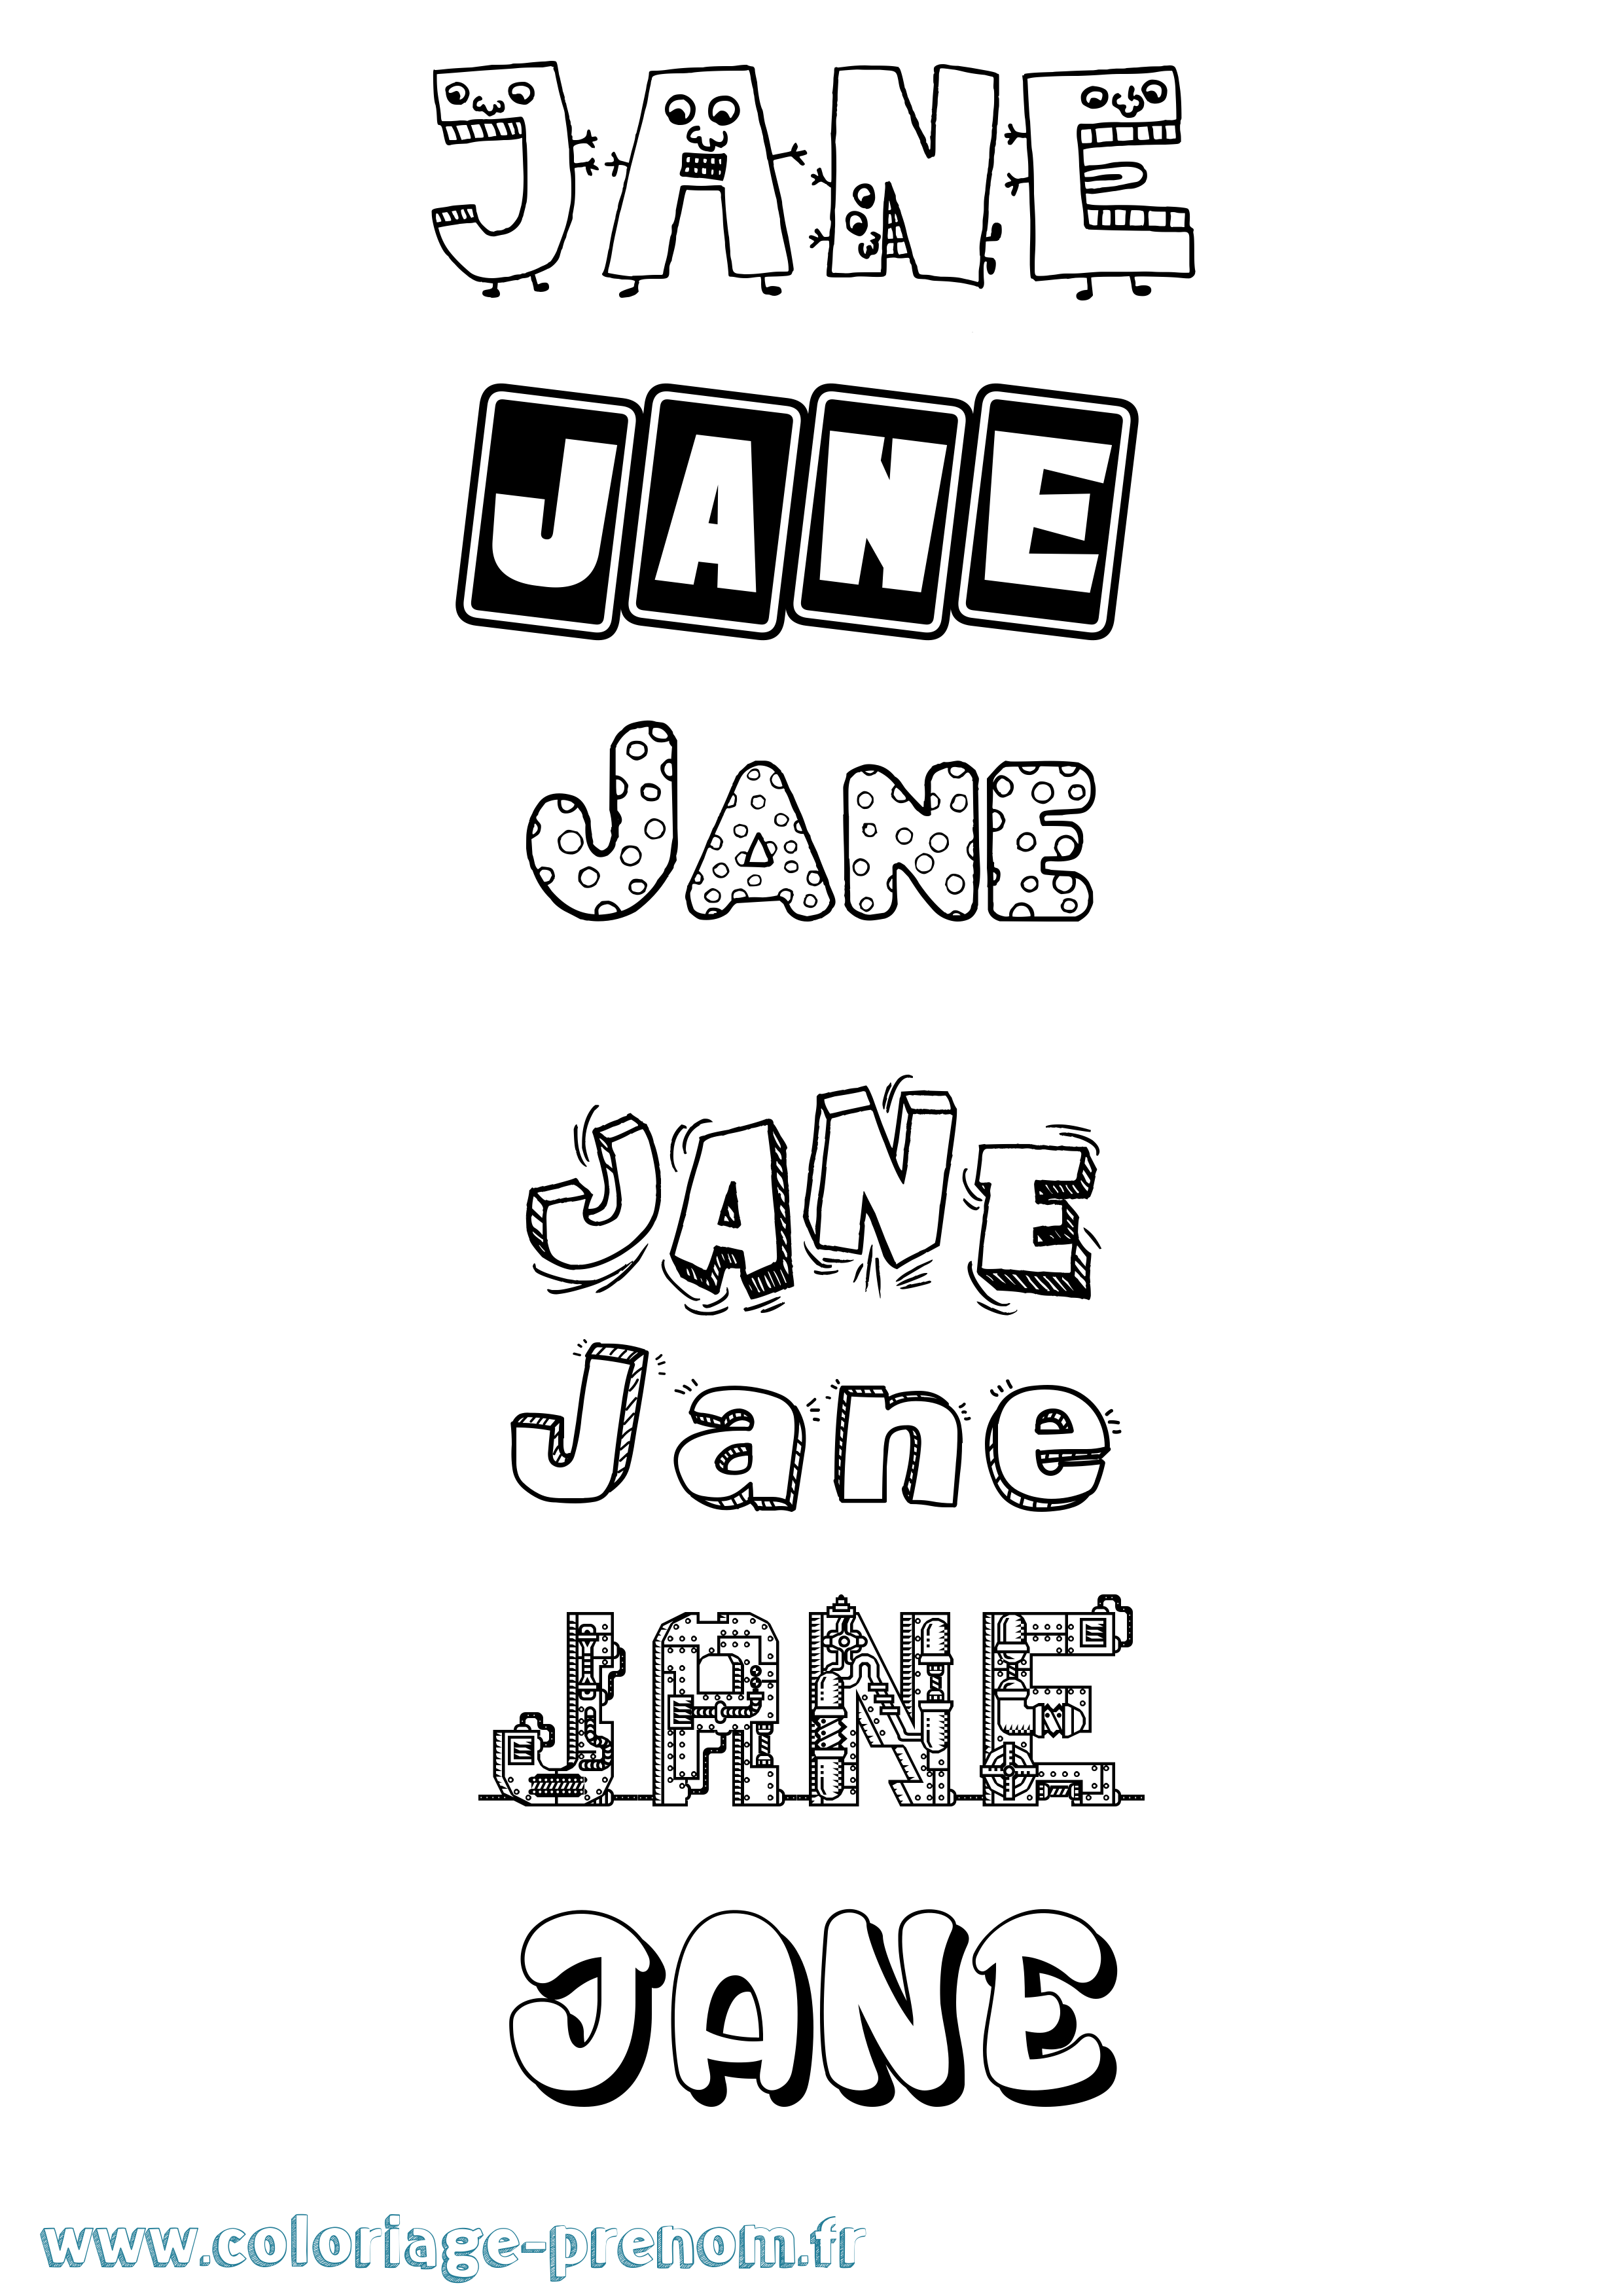 Coloriage prénom Jane Fun